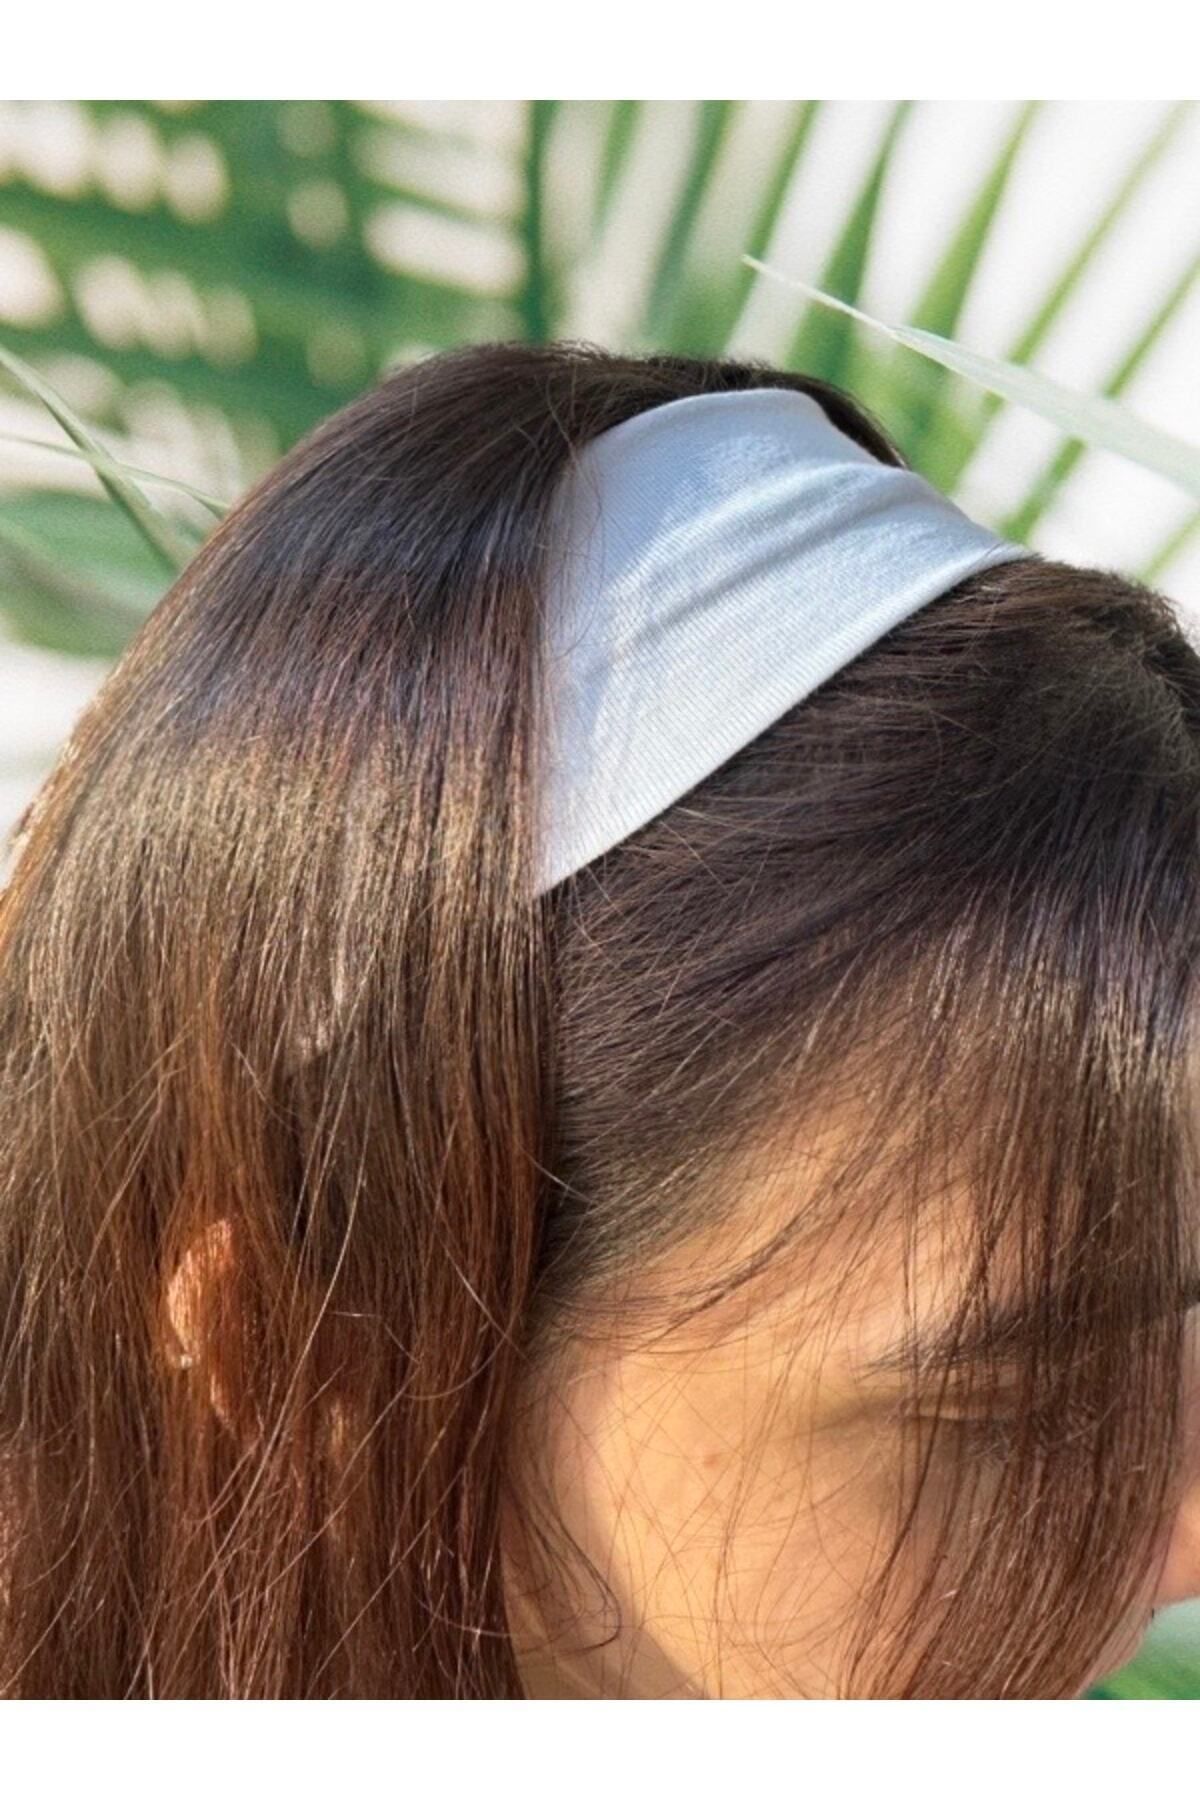 Women Yoga Headbands – HiFEN